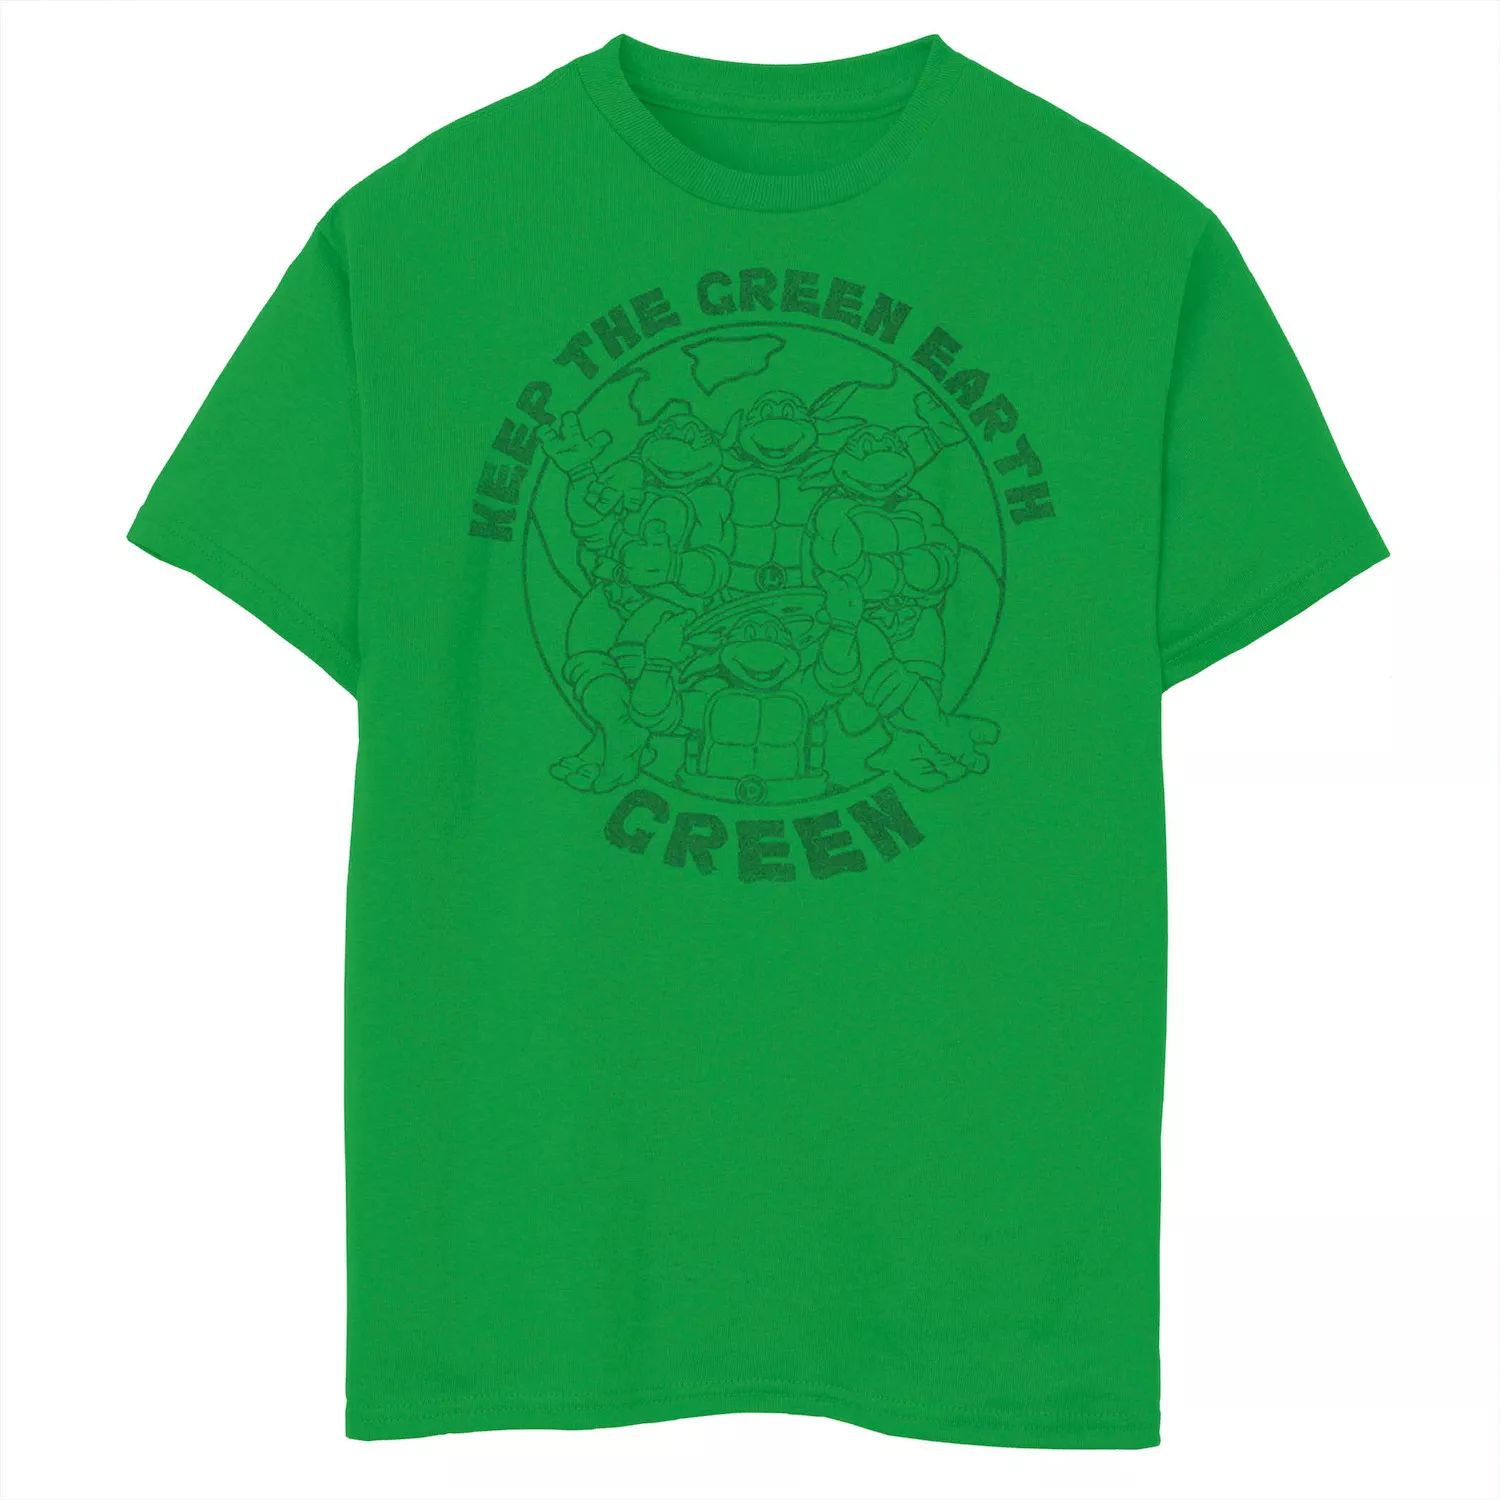 Зеленая футболка с рисунком «Черепашки-ниндзя» для мальчиков 8–20 лет Licensed Character зеленая футболка с рисунком черепашки ниндзя для мальчиков 8–20 лет licensed character